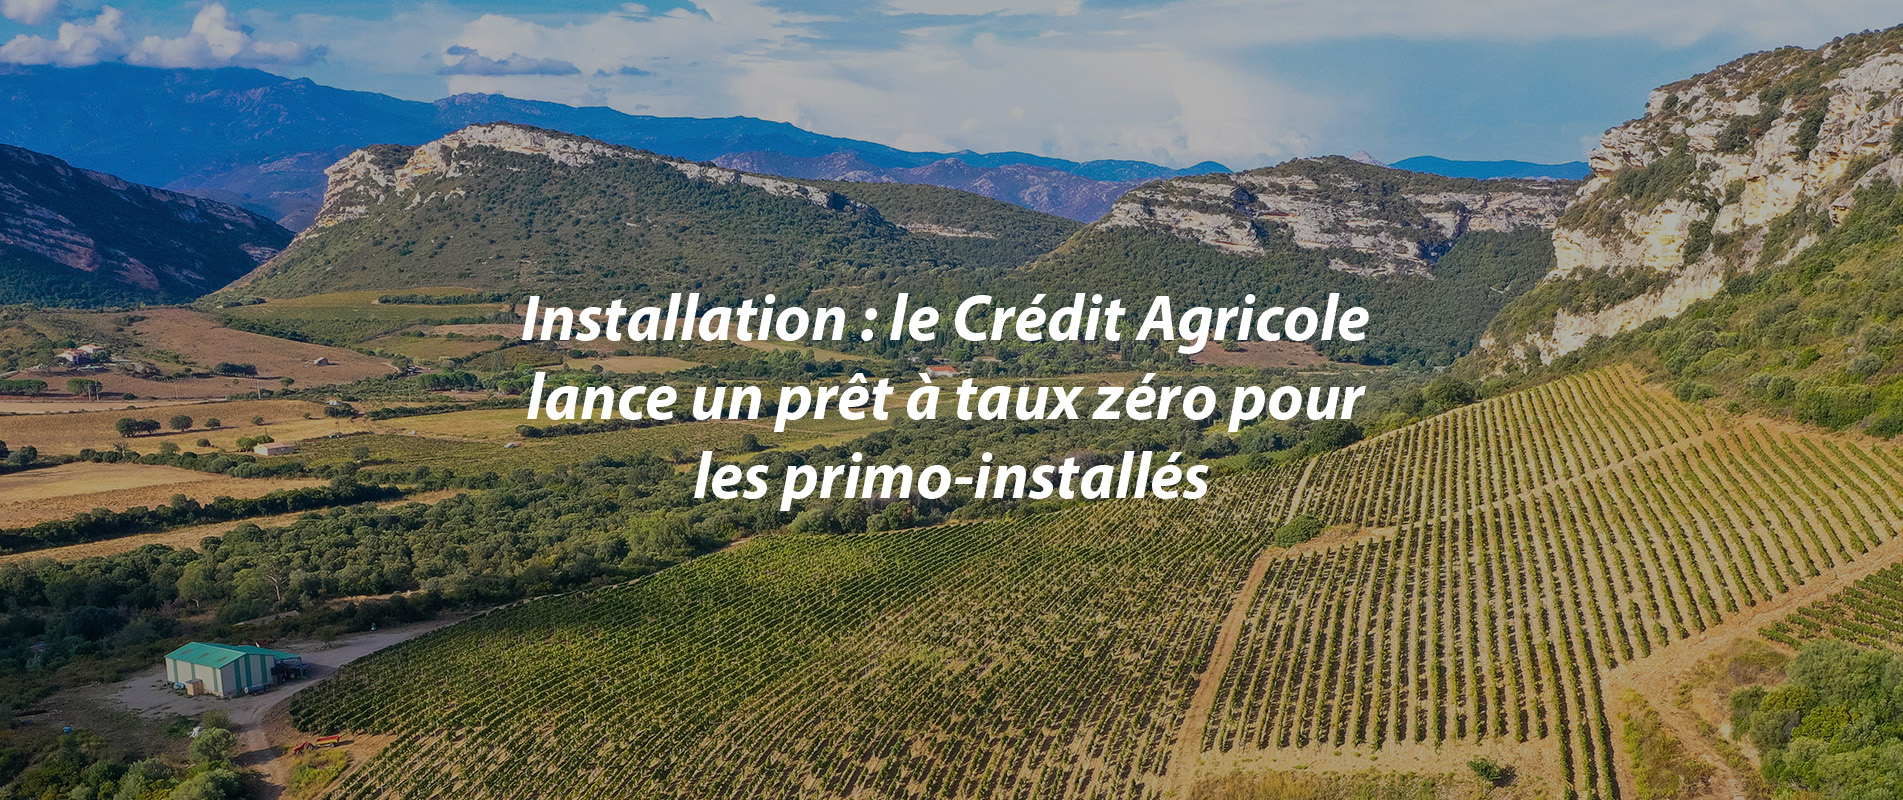 Installation : Le Crédit agricole lance un prêt à taux zéro pour les primo-installés